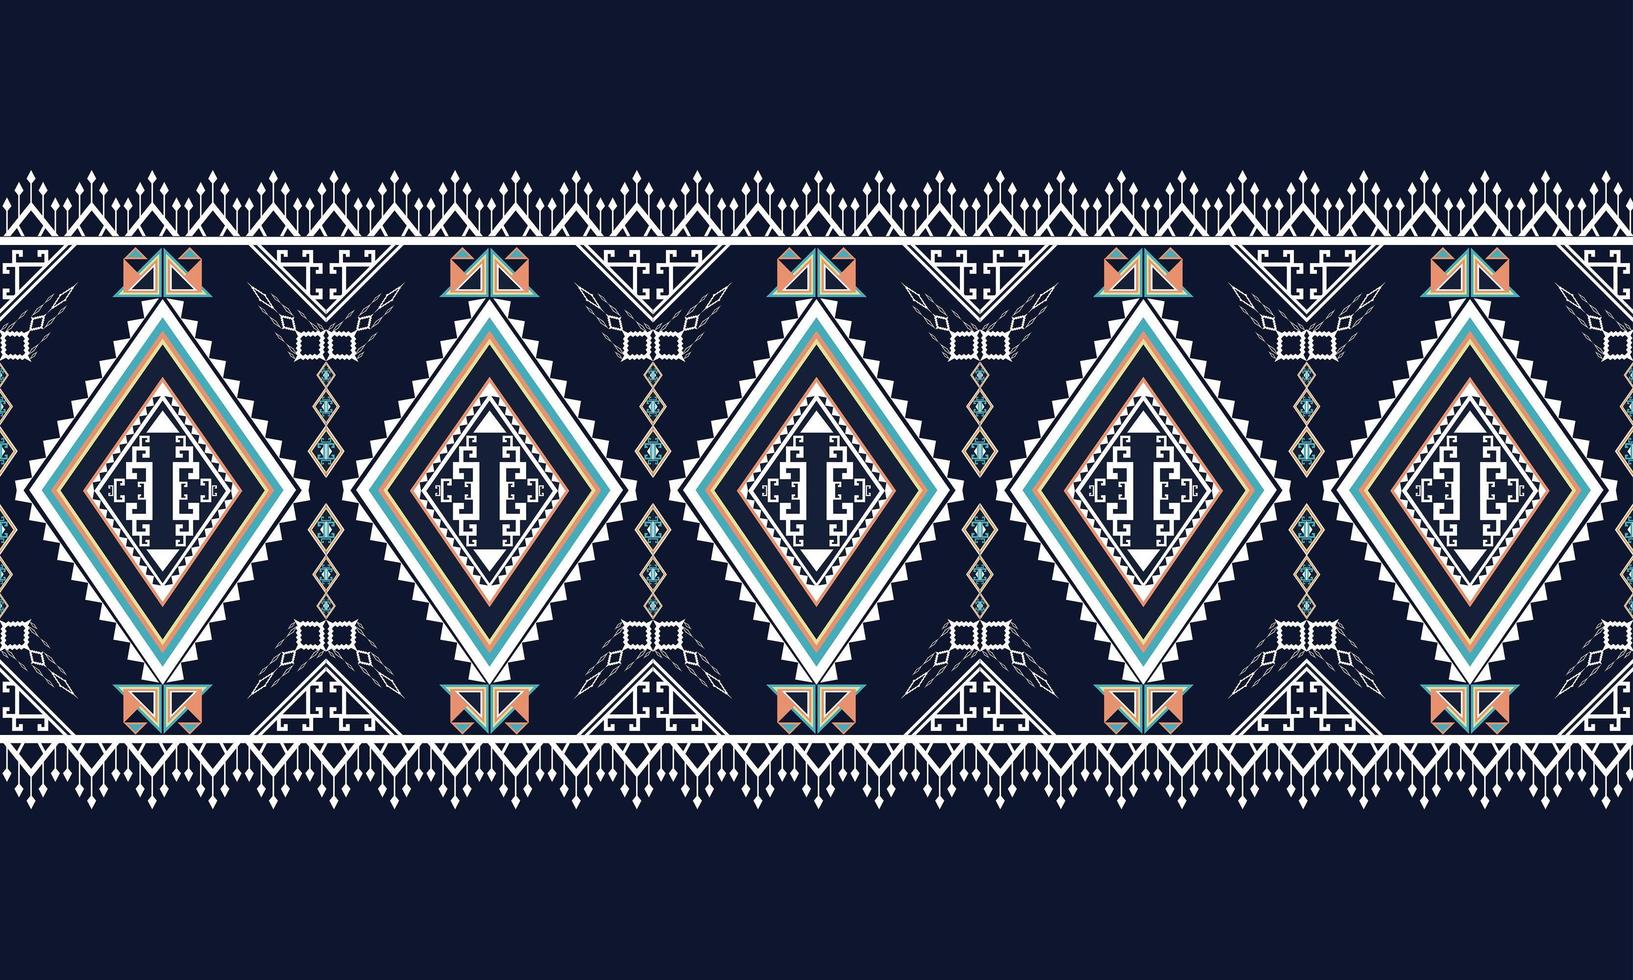 pattern.carpet étnico geométrico, papel de parede, roupas, embrulho, batik, tecido, estilo de bordado de ilustração vetorial. vetor